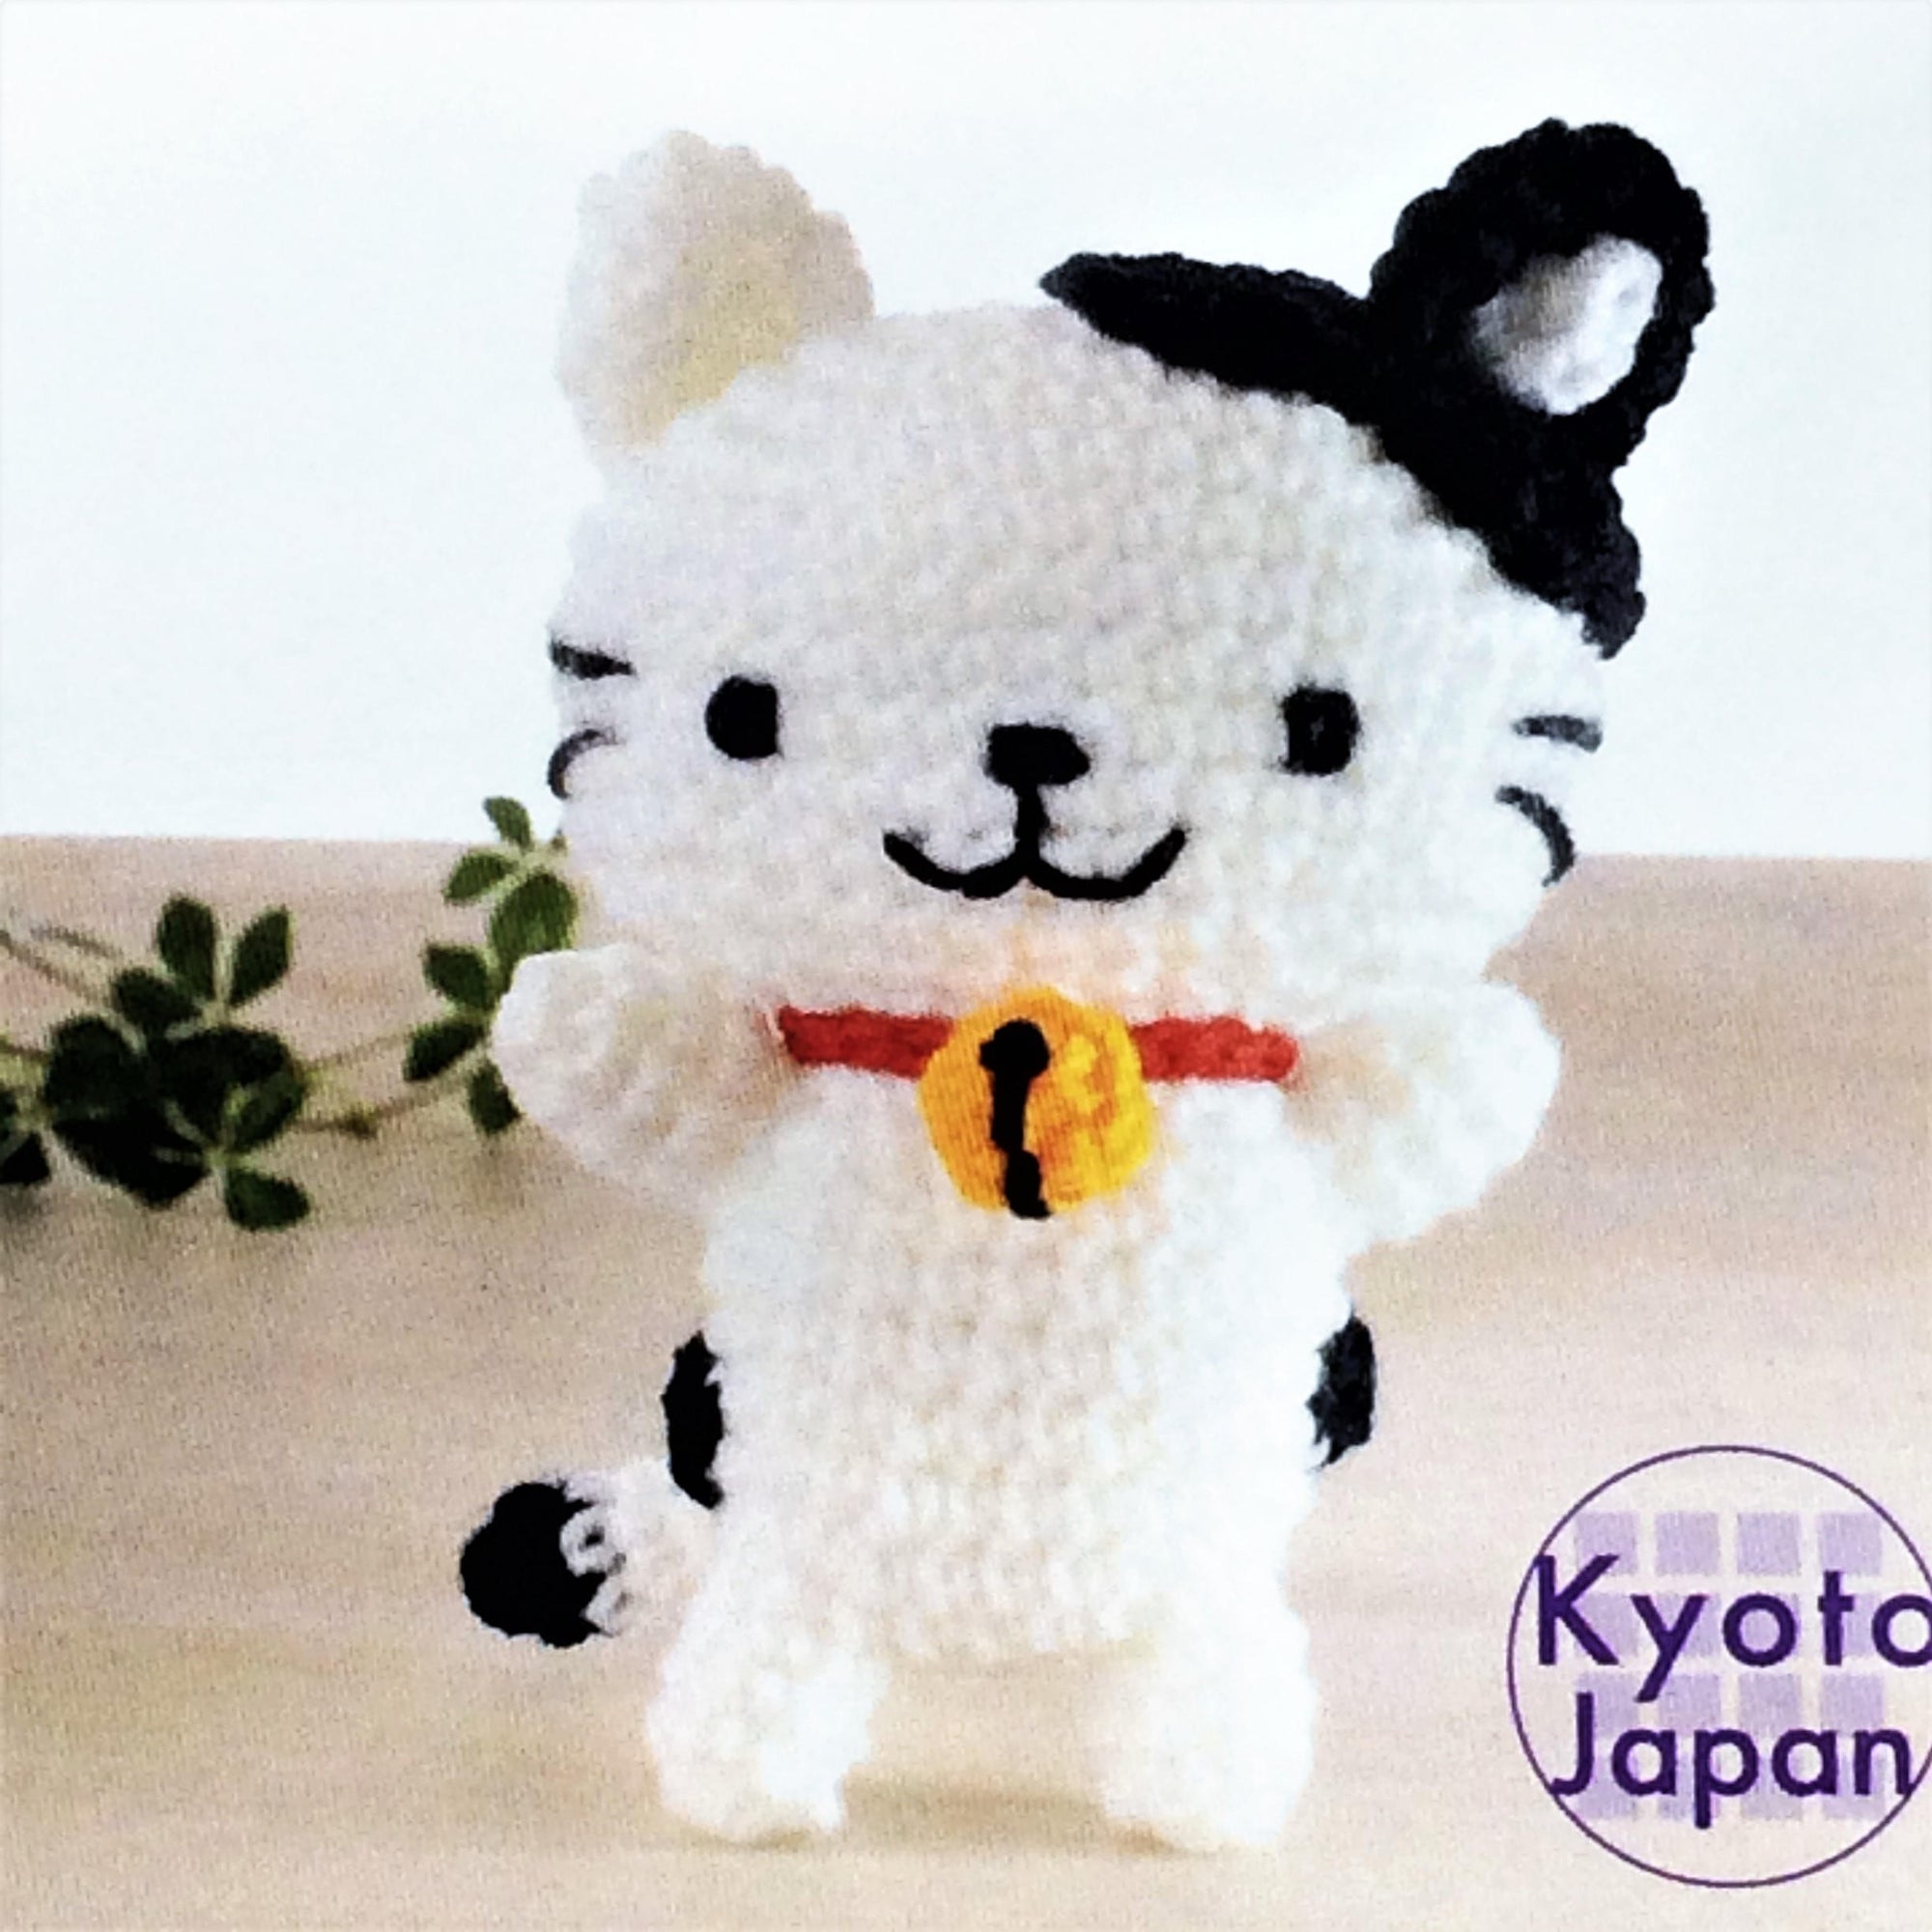 Cat Crochet Kit